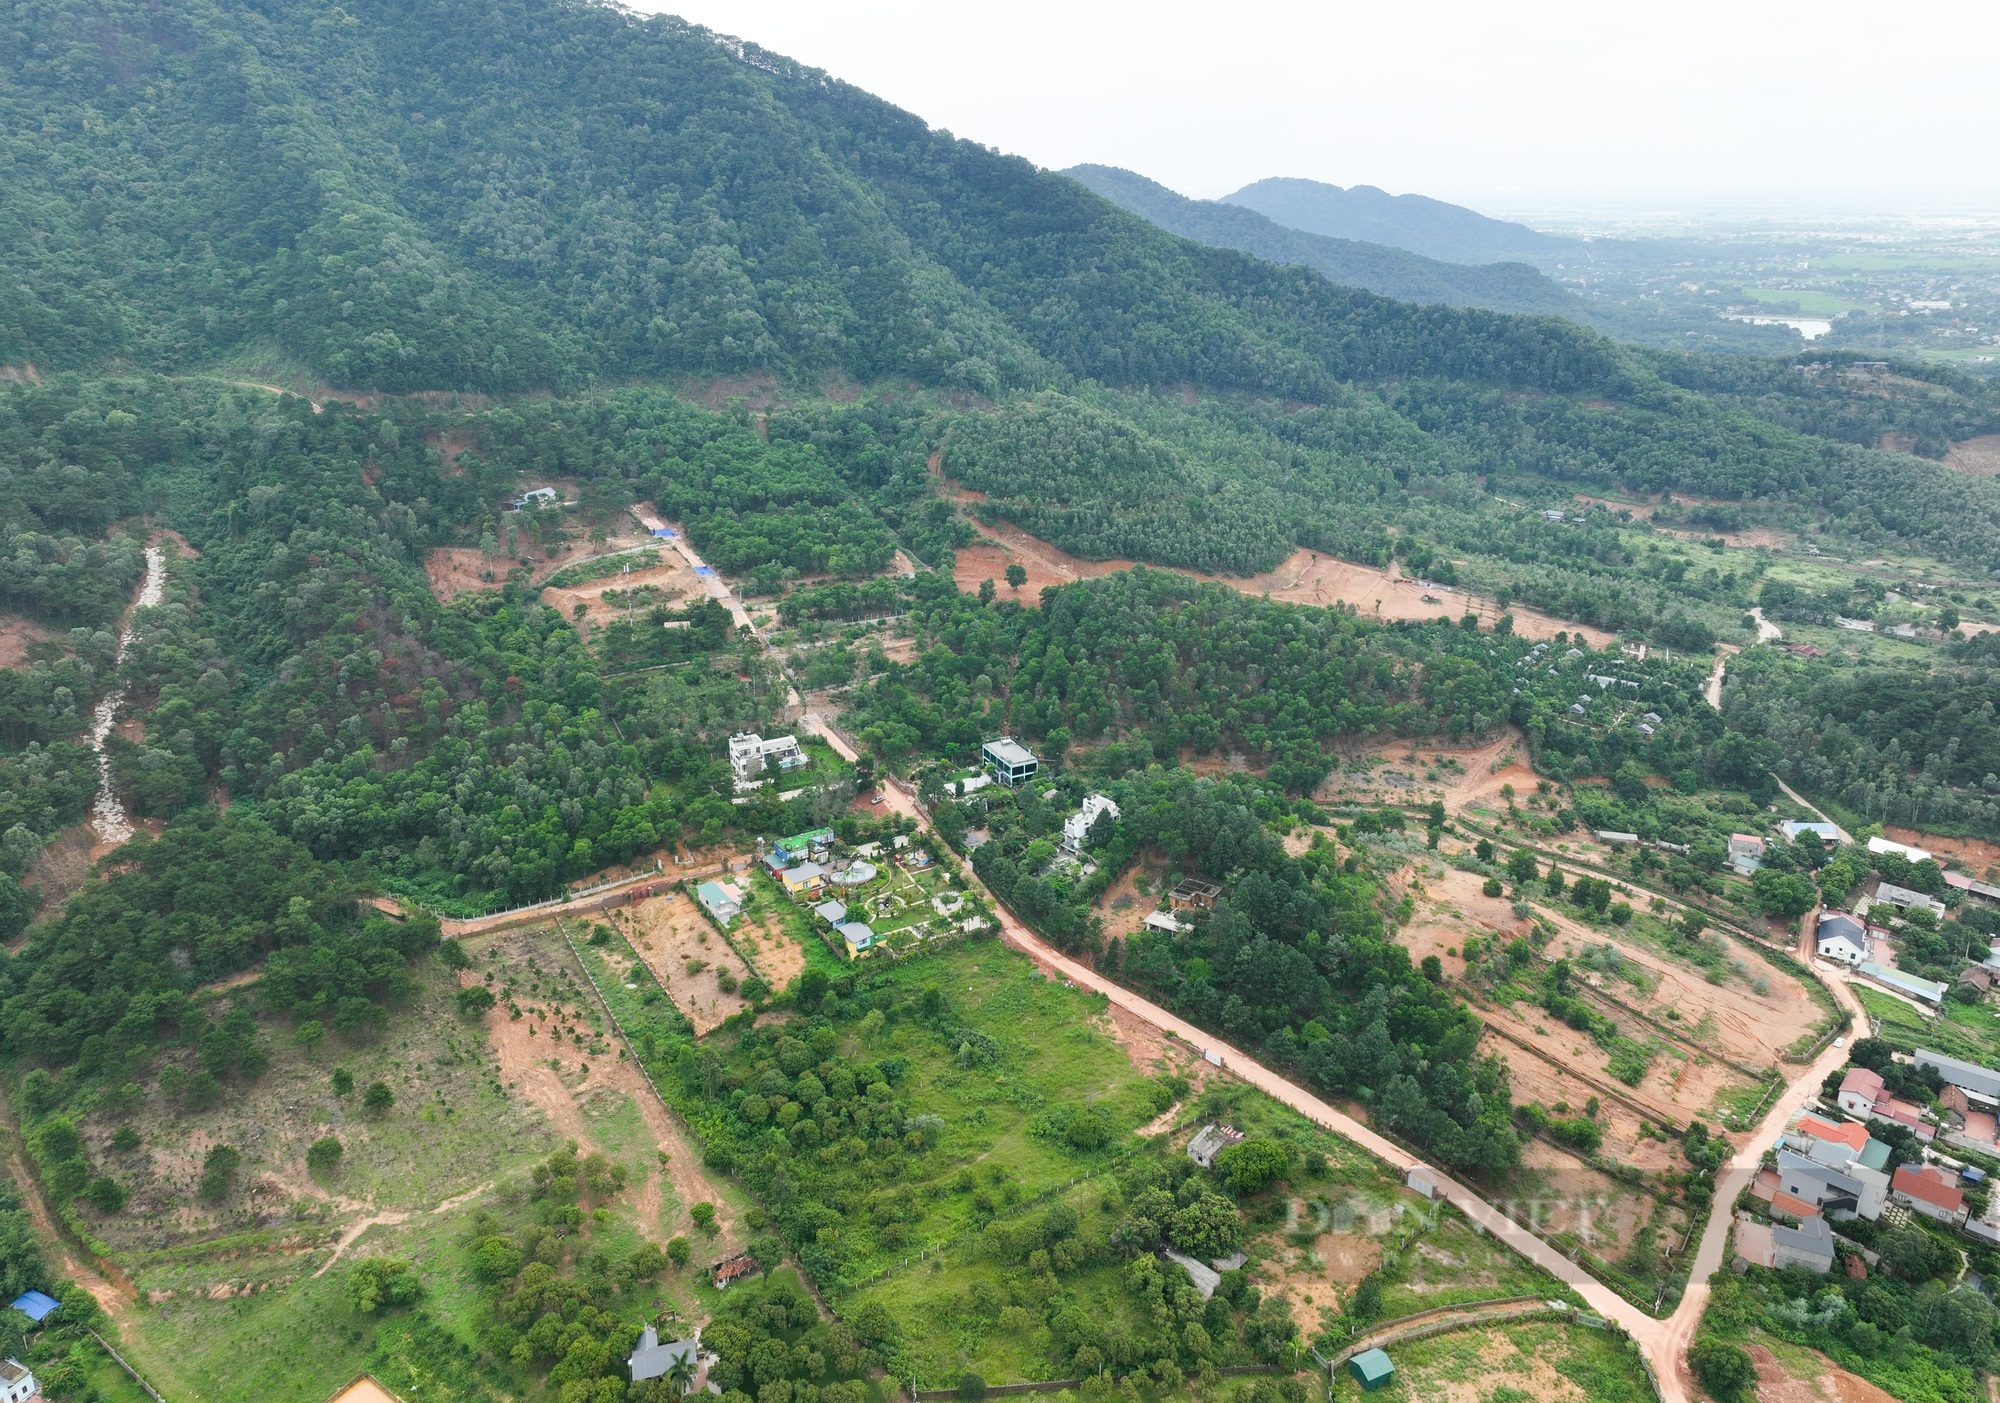 Chi cục Kiểm Lâm Hà Nội nói về Homestay xây trái phép trên đất rừng phòng hộ đặc dụng Sóc Sơn - Ảnh 4.